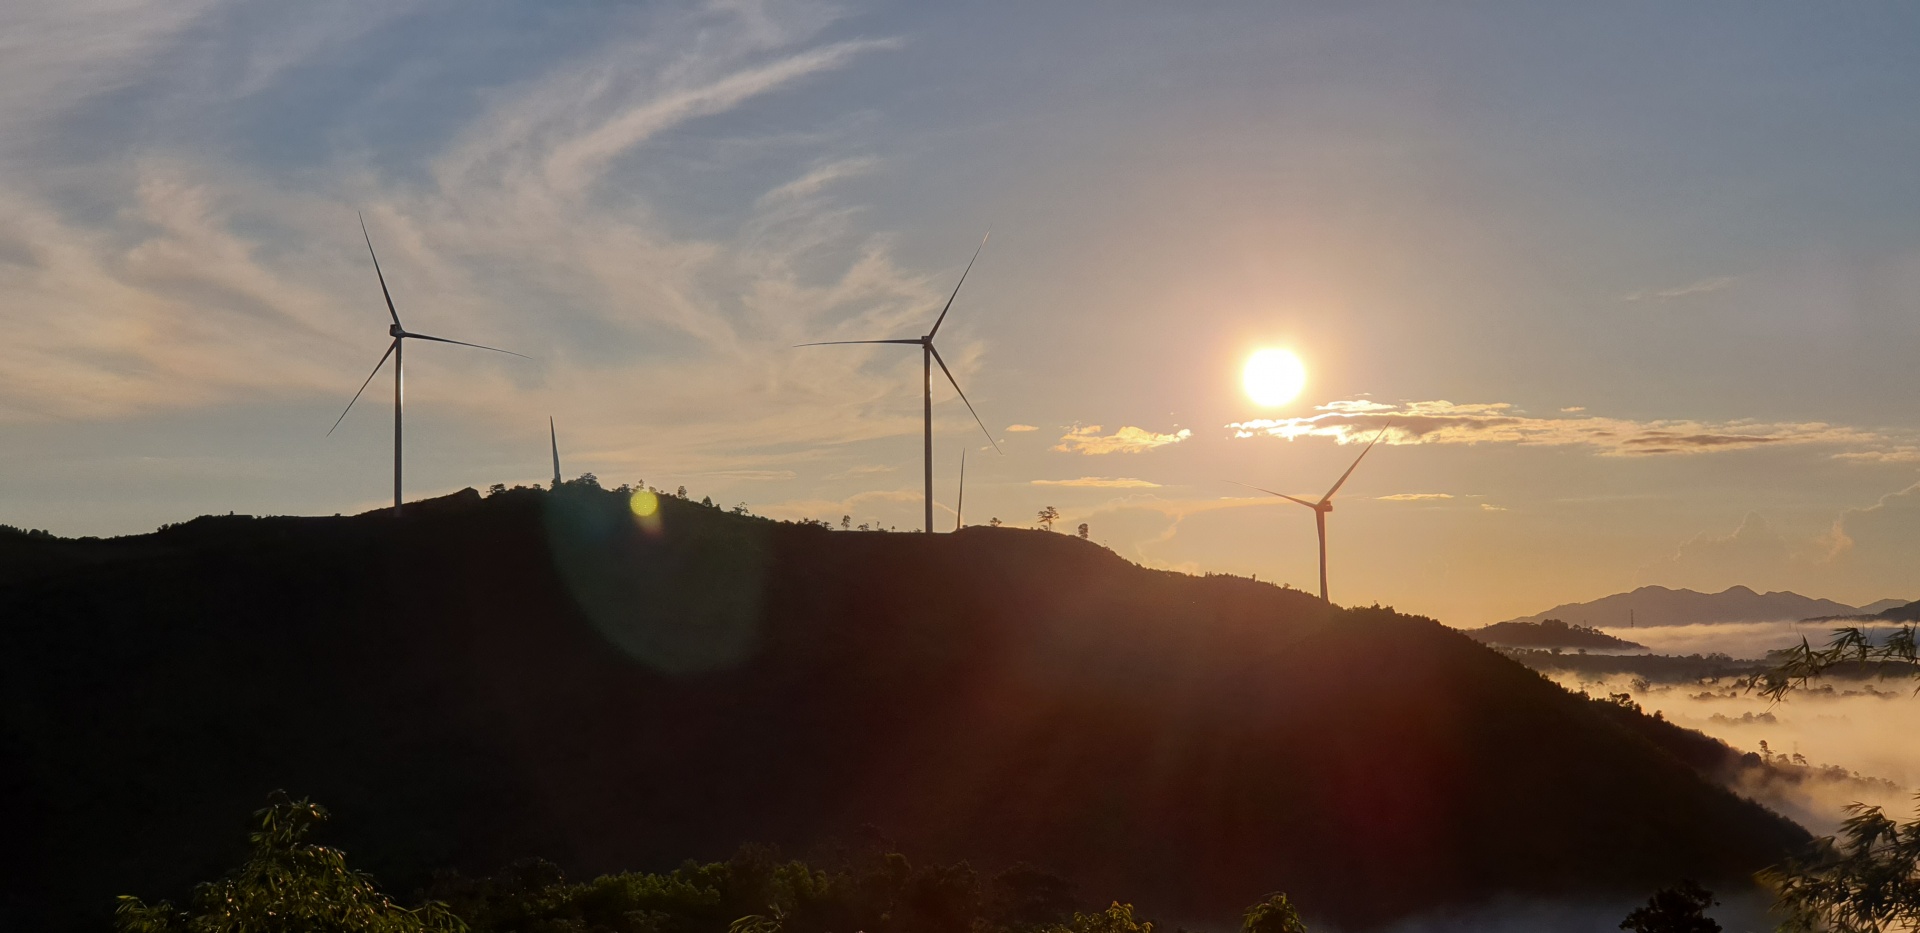 JICA supports Vietnam in renewable energy development